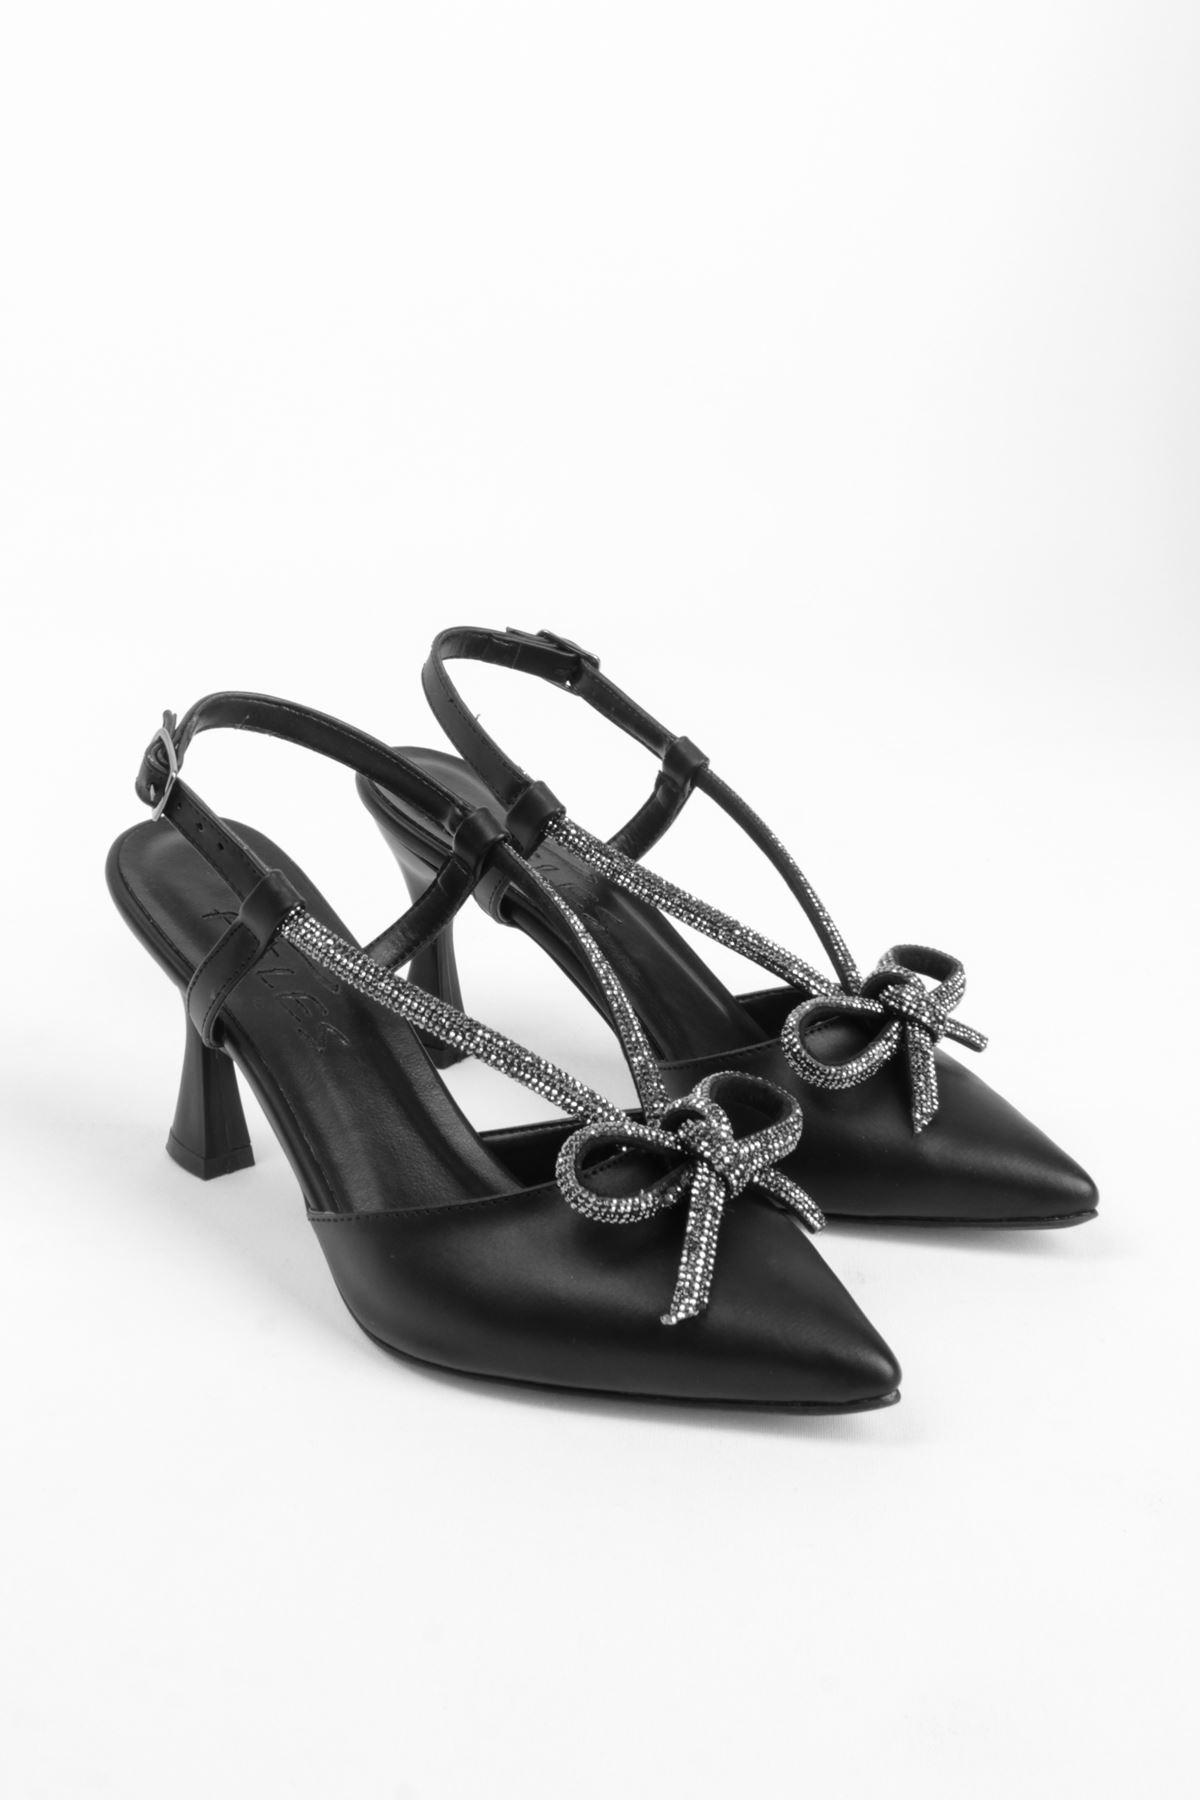 Petunya Kadın Topuklu Ayakkabı Kurdela Taş Geçişli-siyah